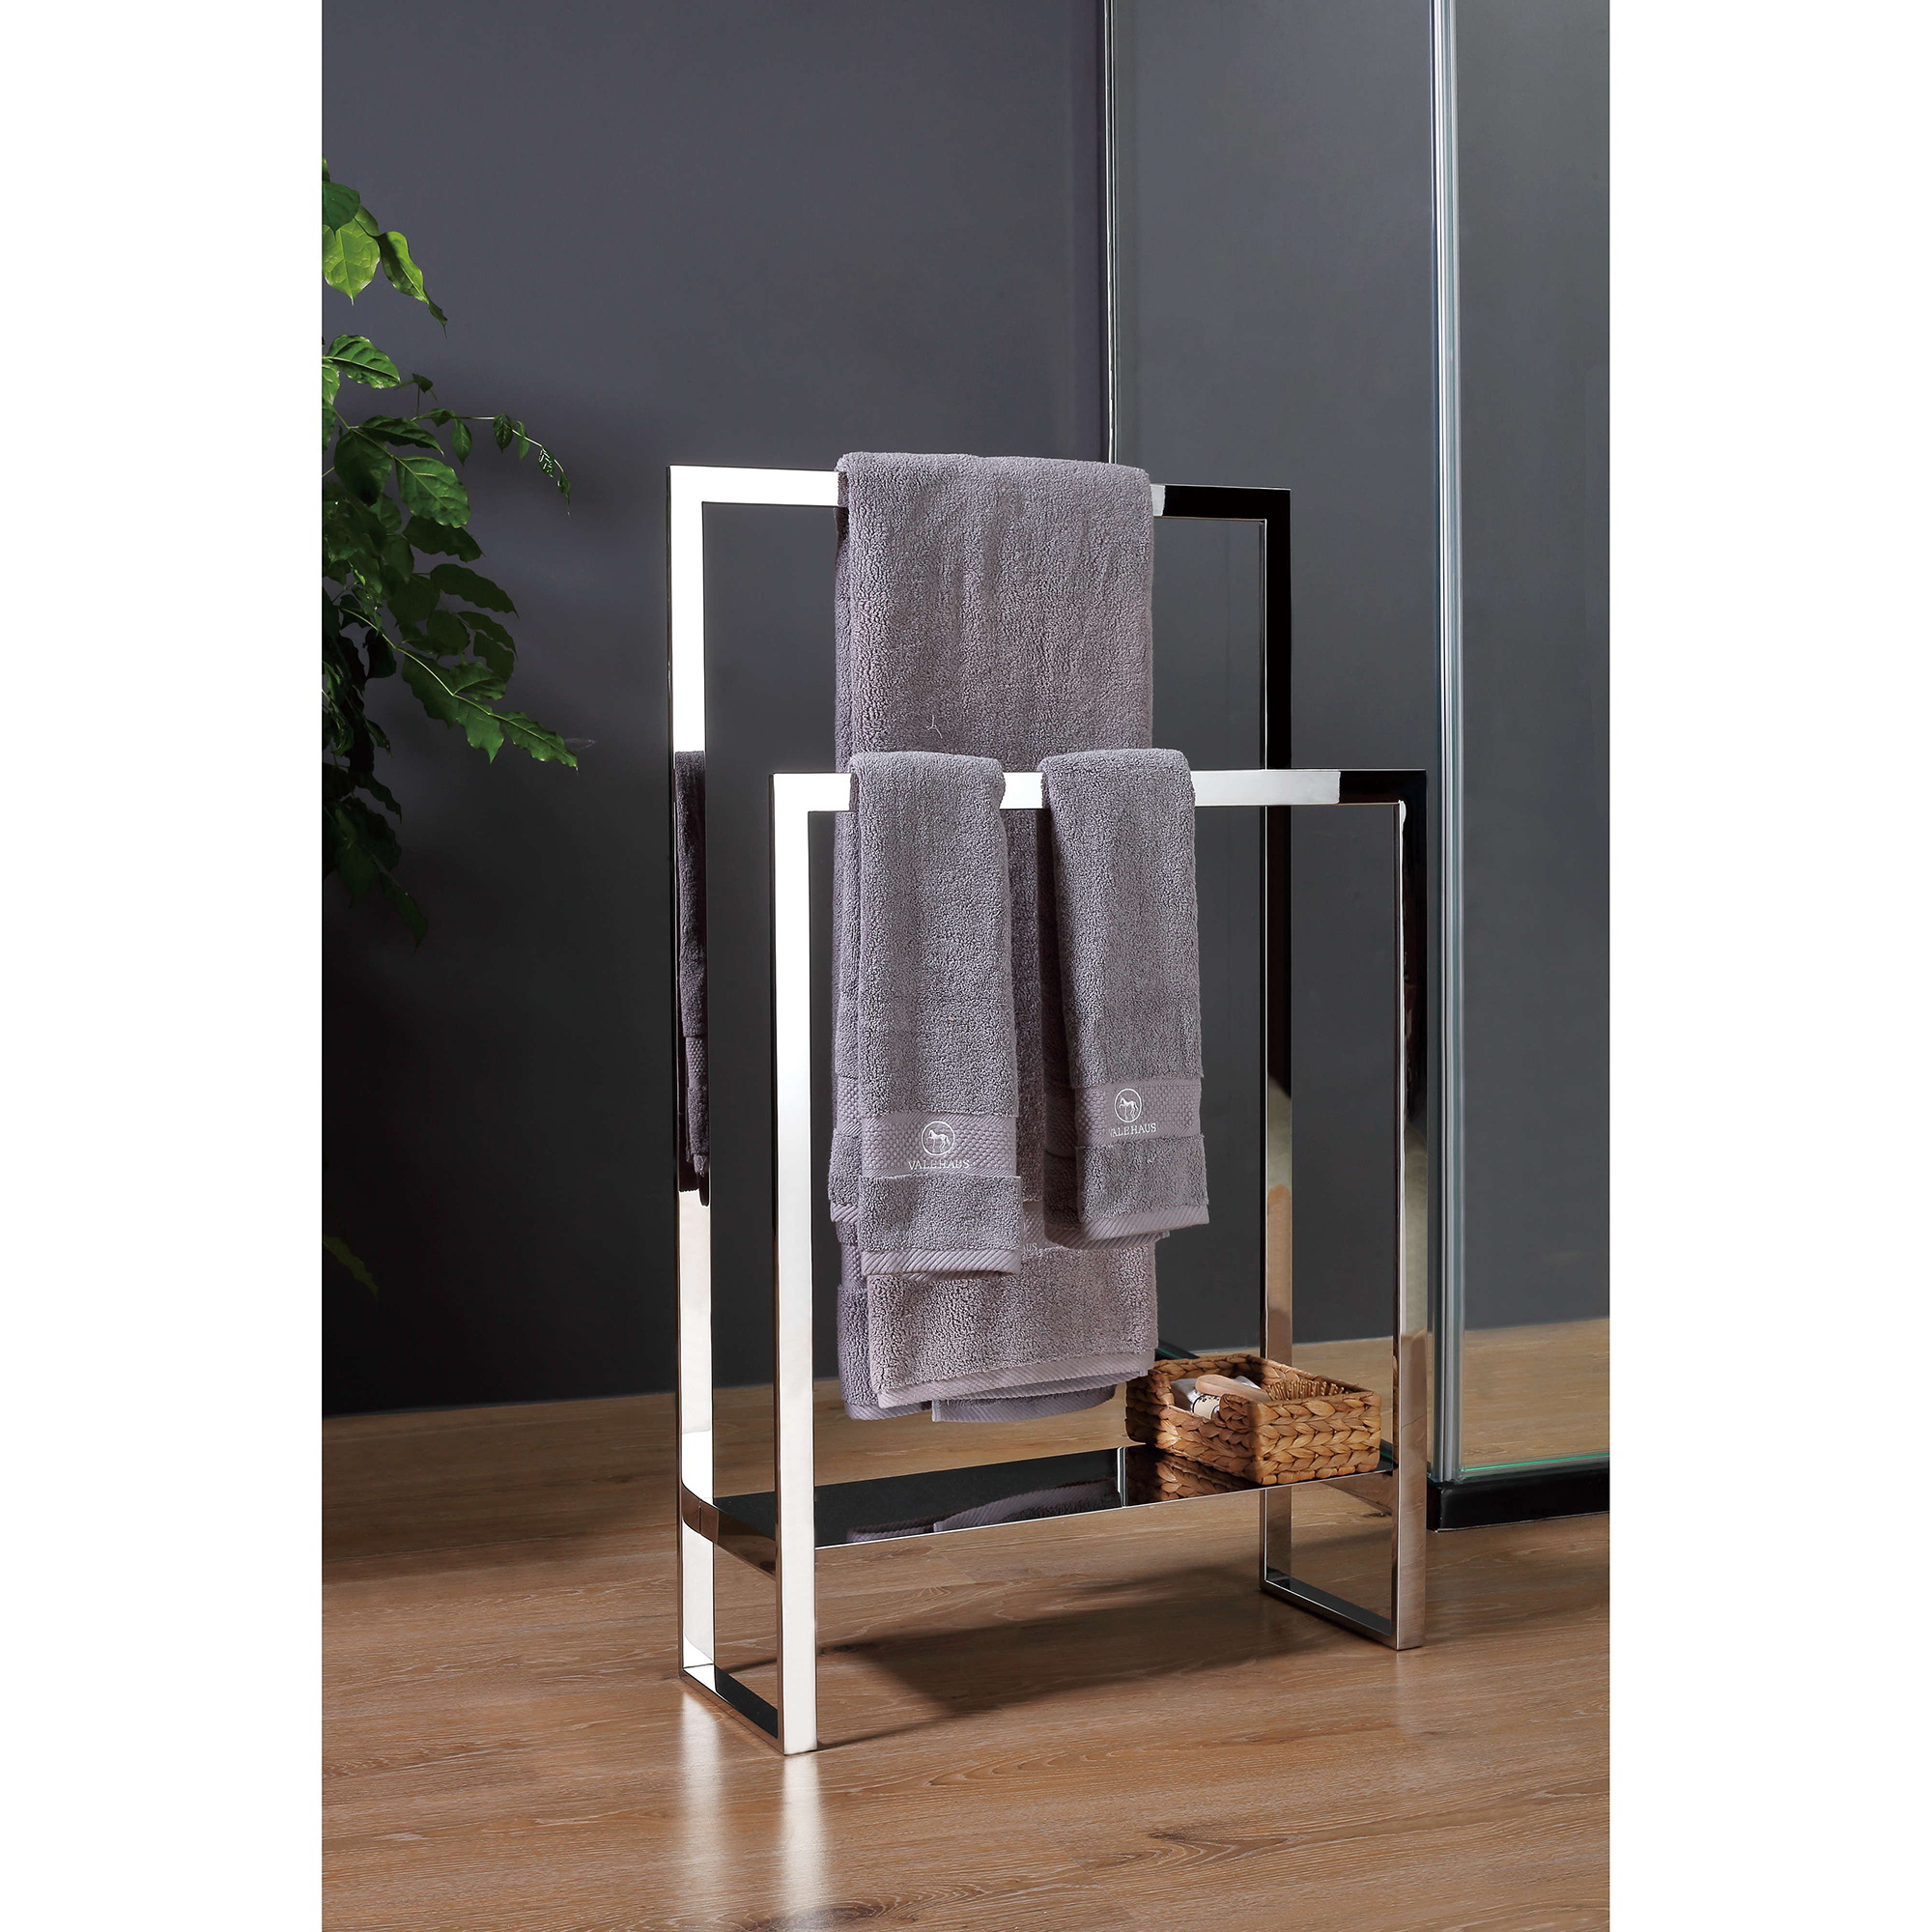 Free-standing shower towel rack-002.jpg